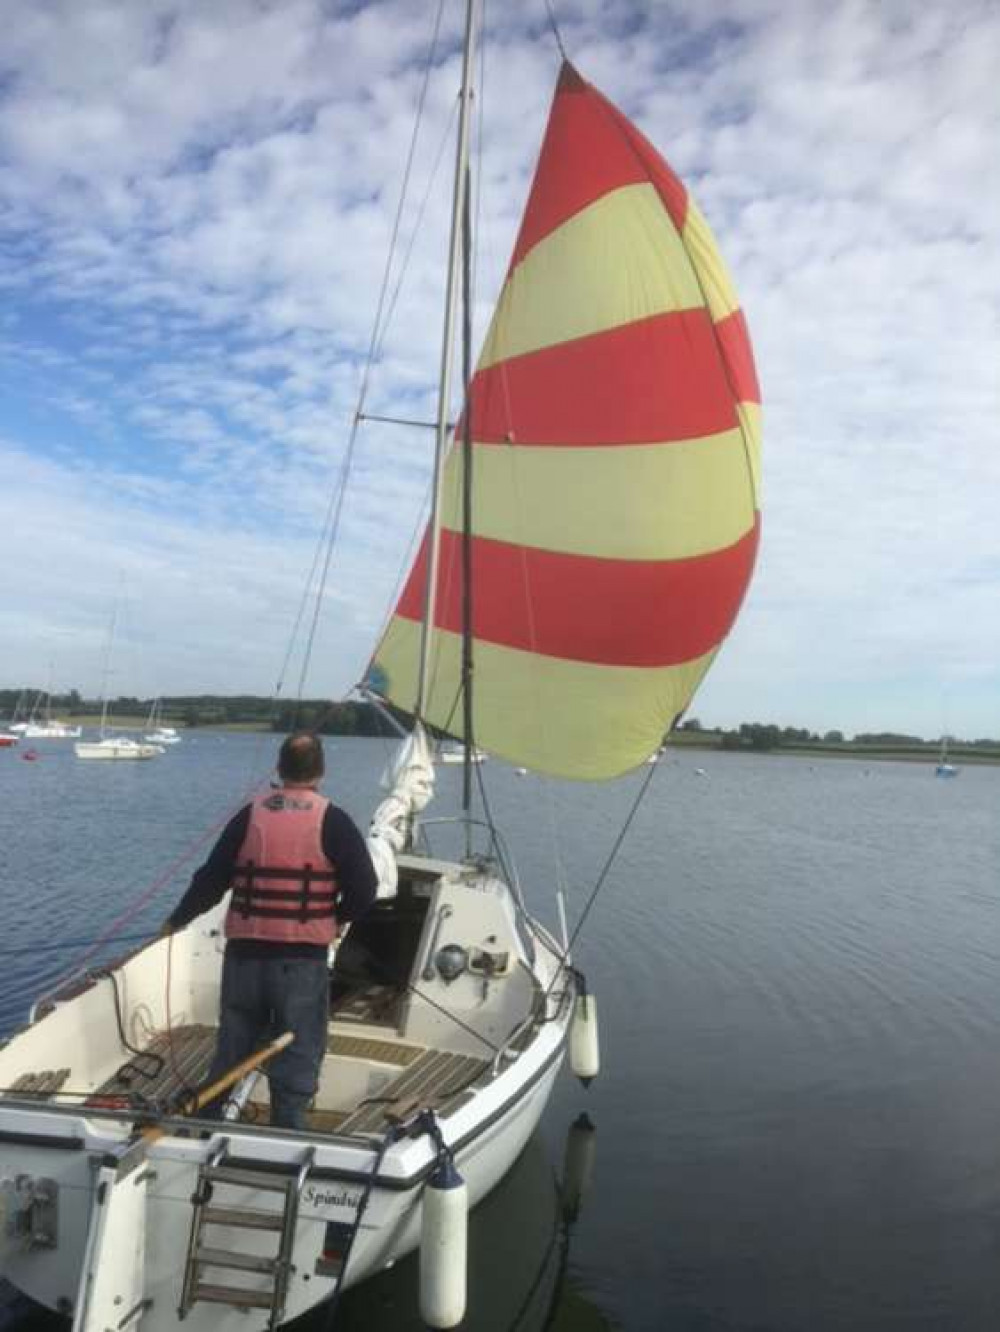 Sailing on Rutland Water (image courtesy of David Cadman)